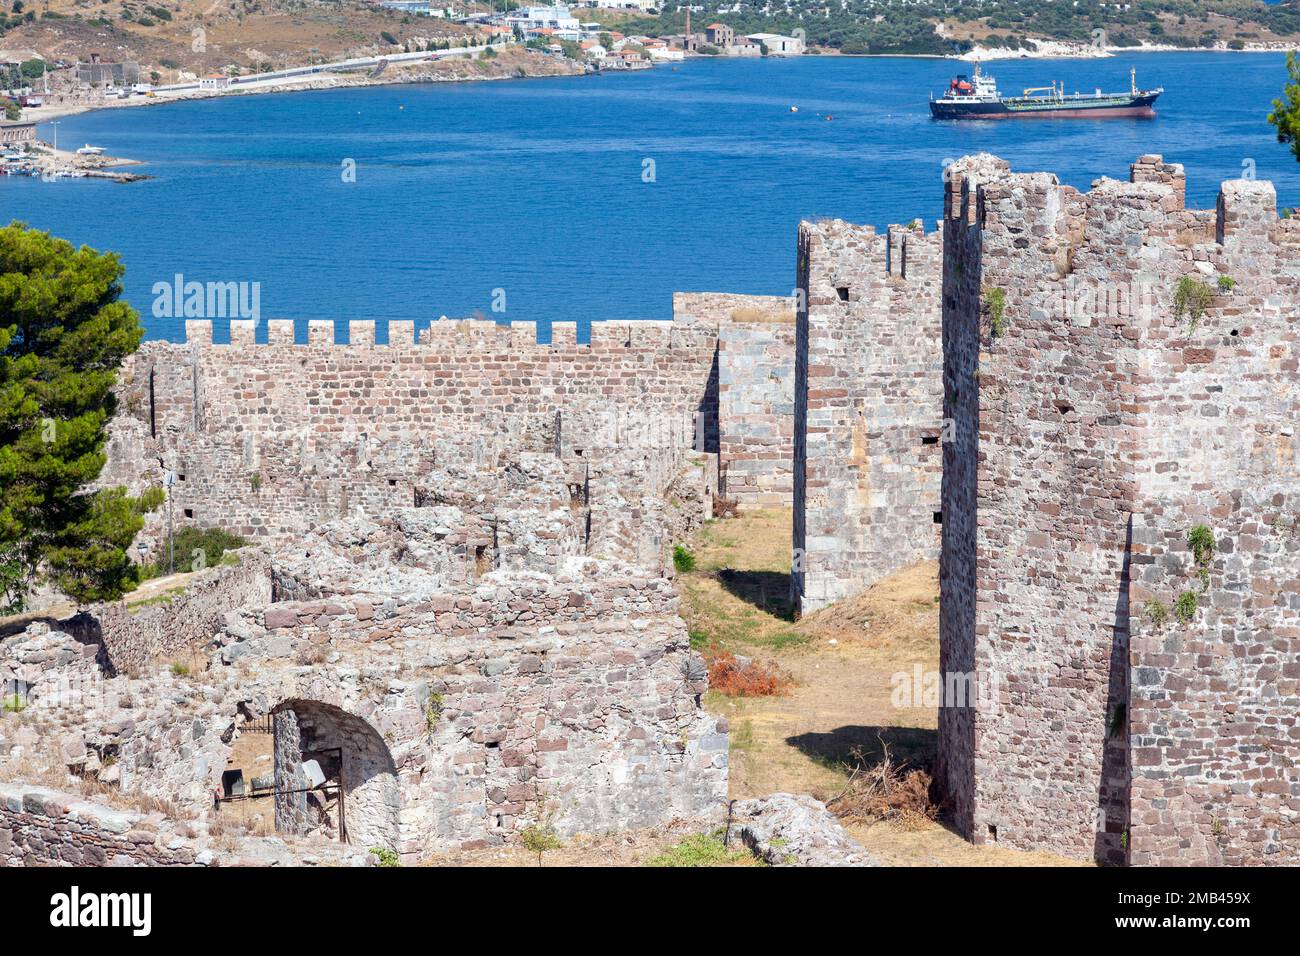 Vue partielle sur le château médiéval de Mytilène, sur l'île de Lesvos, en Grèce, en Europe. Le fort a été construit pendant l'ère byzantine (sur les vestiges plus anciens) Banque D'Images